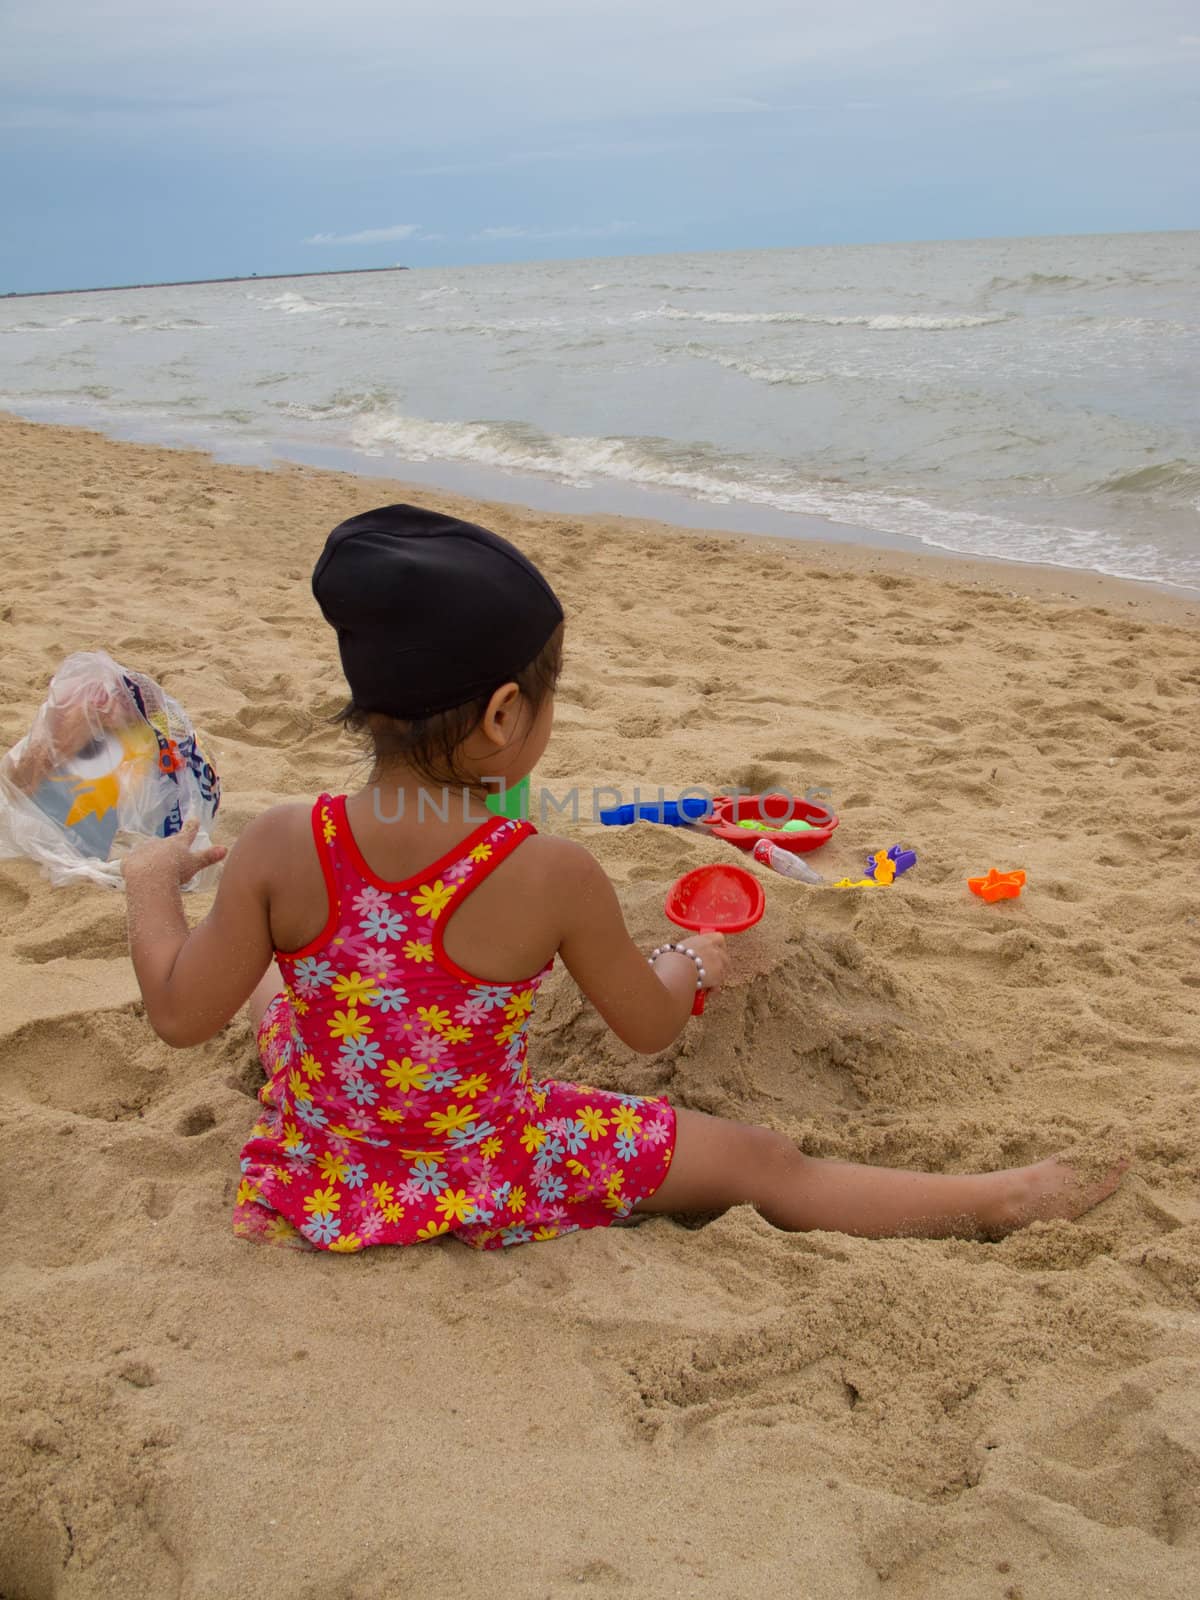 A girl on the beach, Thailand